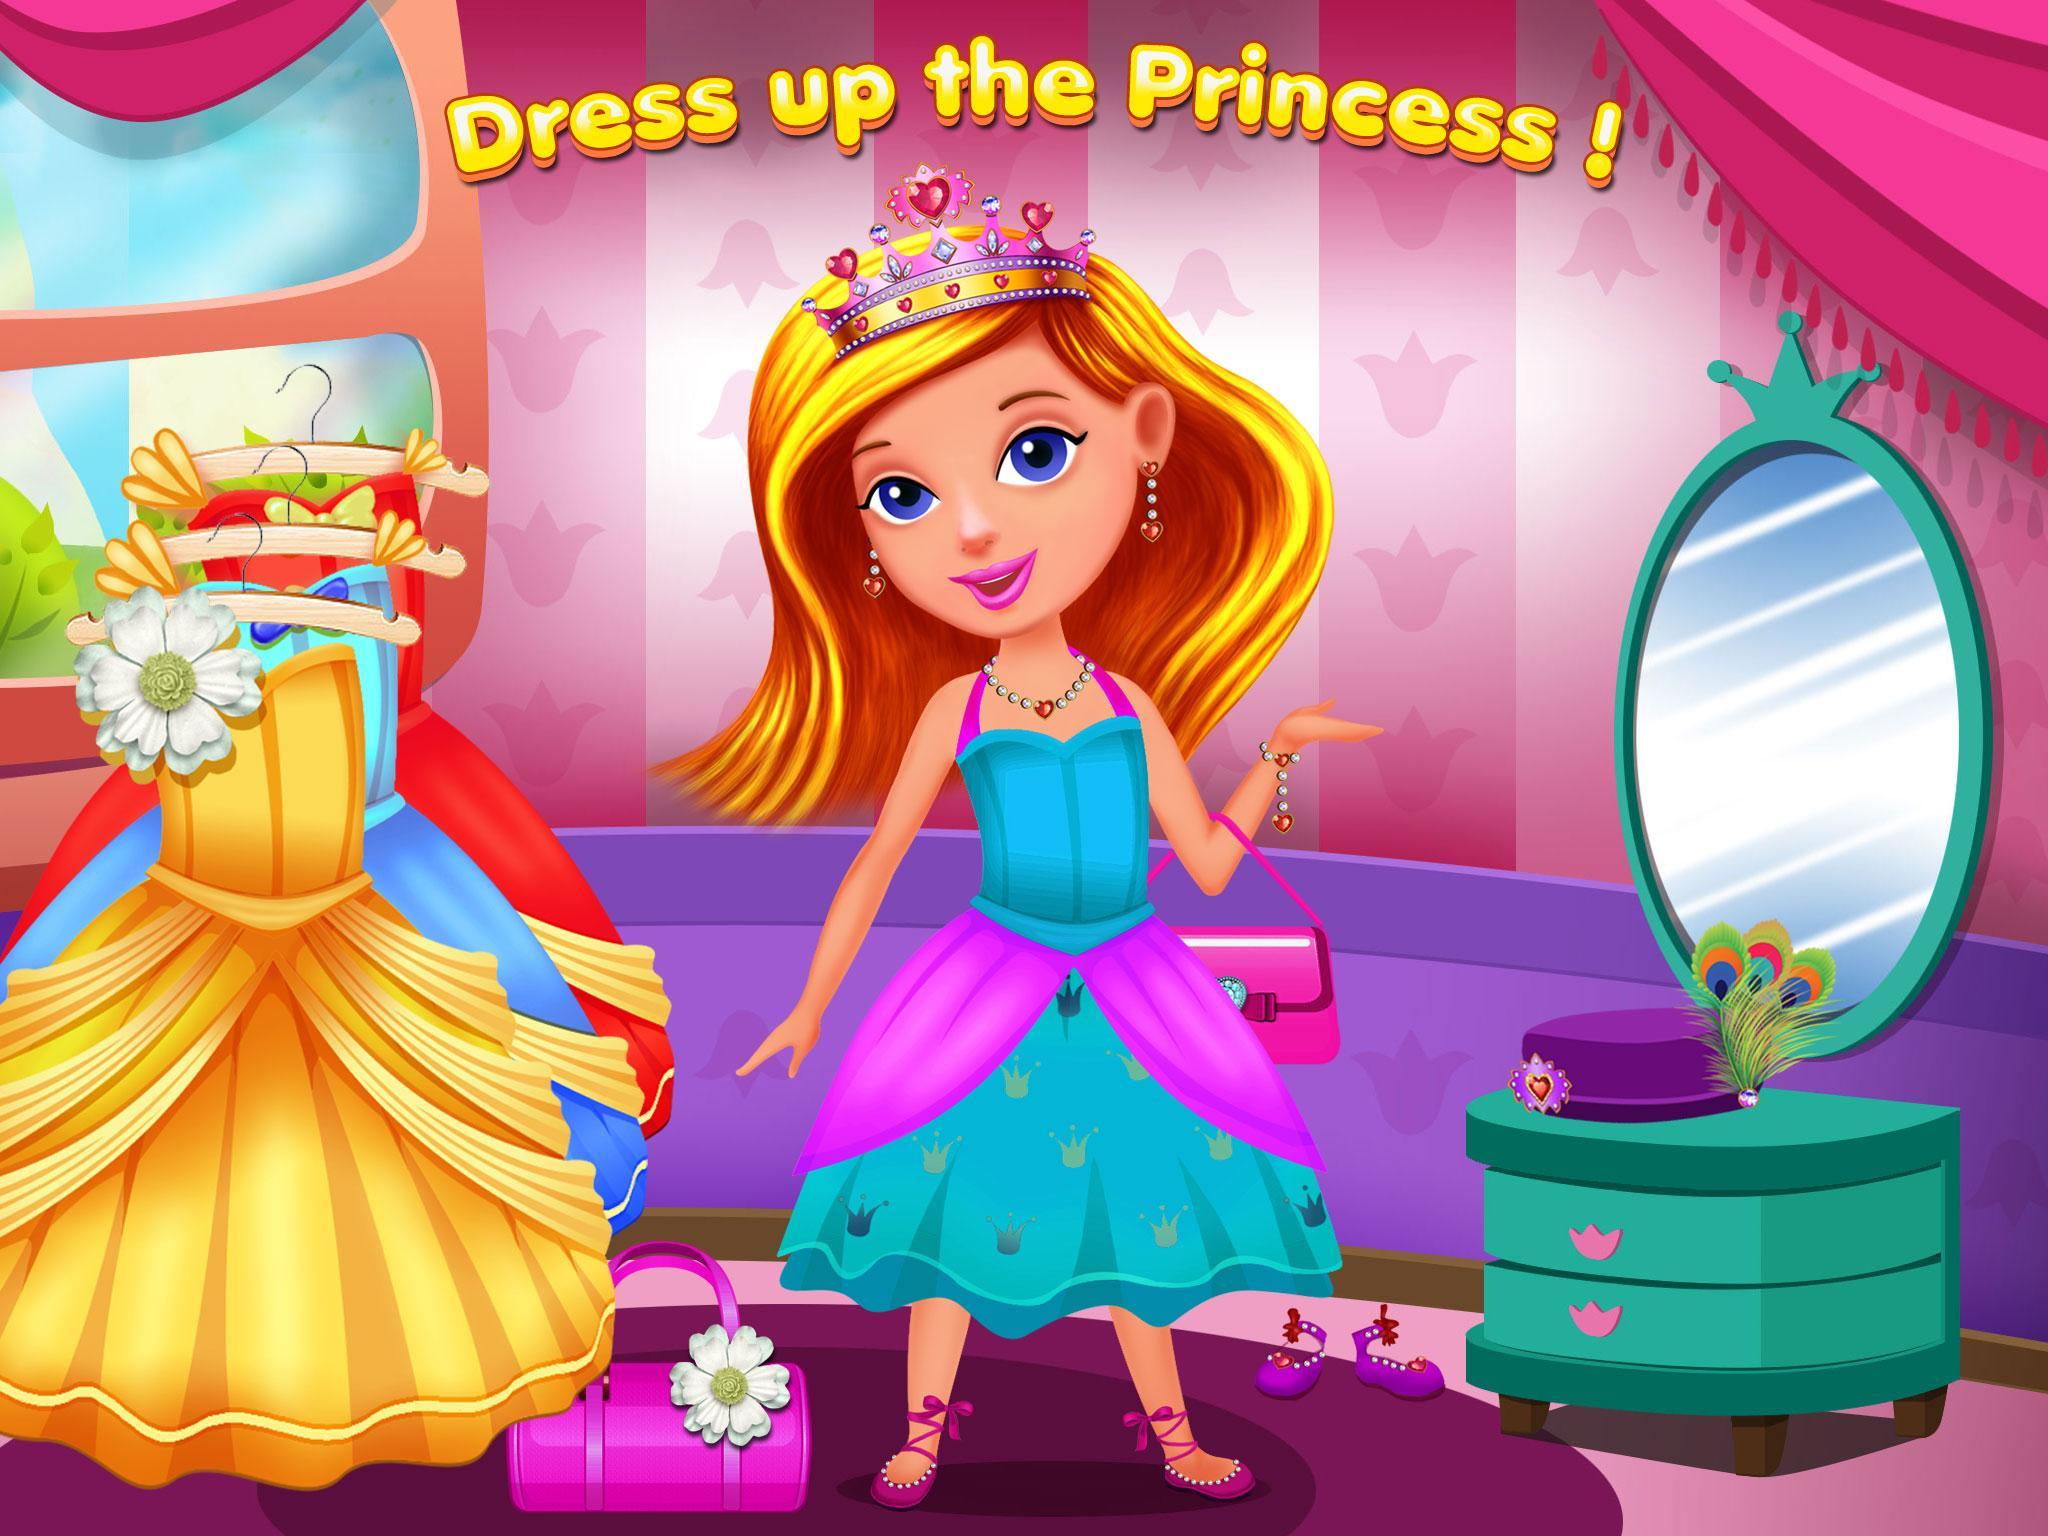 Да здравствует принцесса игра. Игра замок принцесс\ переделки. Принцесса Пич. Игры для девочек 5 лет мебель и принцессы в замке. Как можно поиграть в принцесс дома.